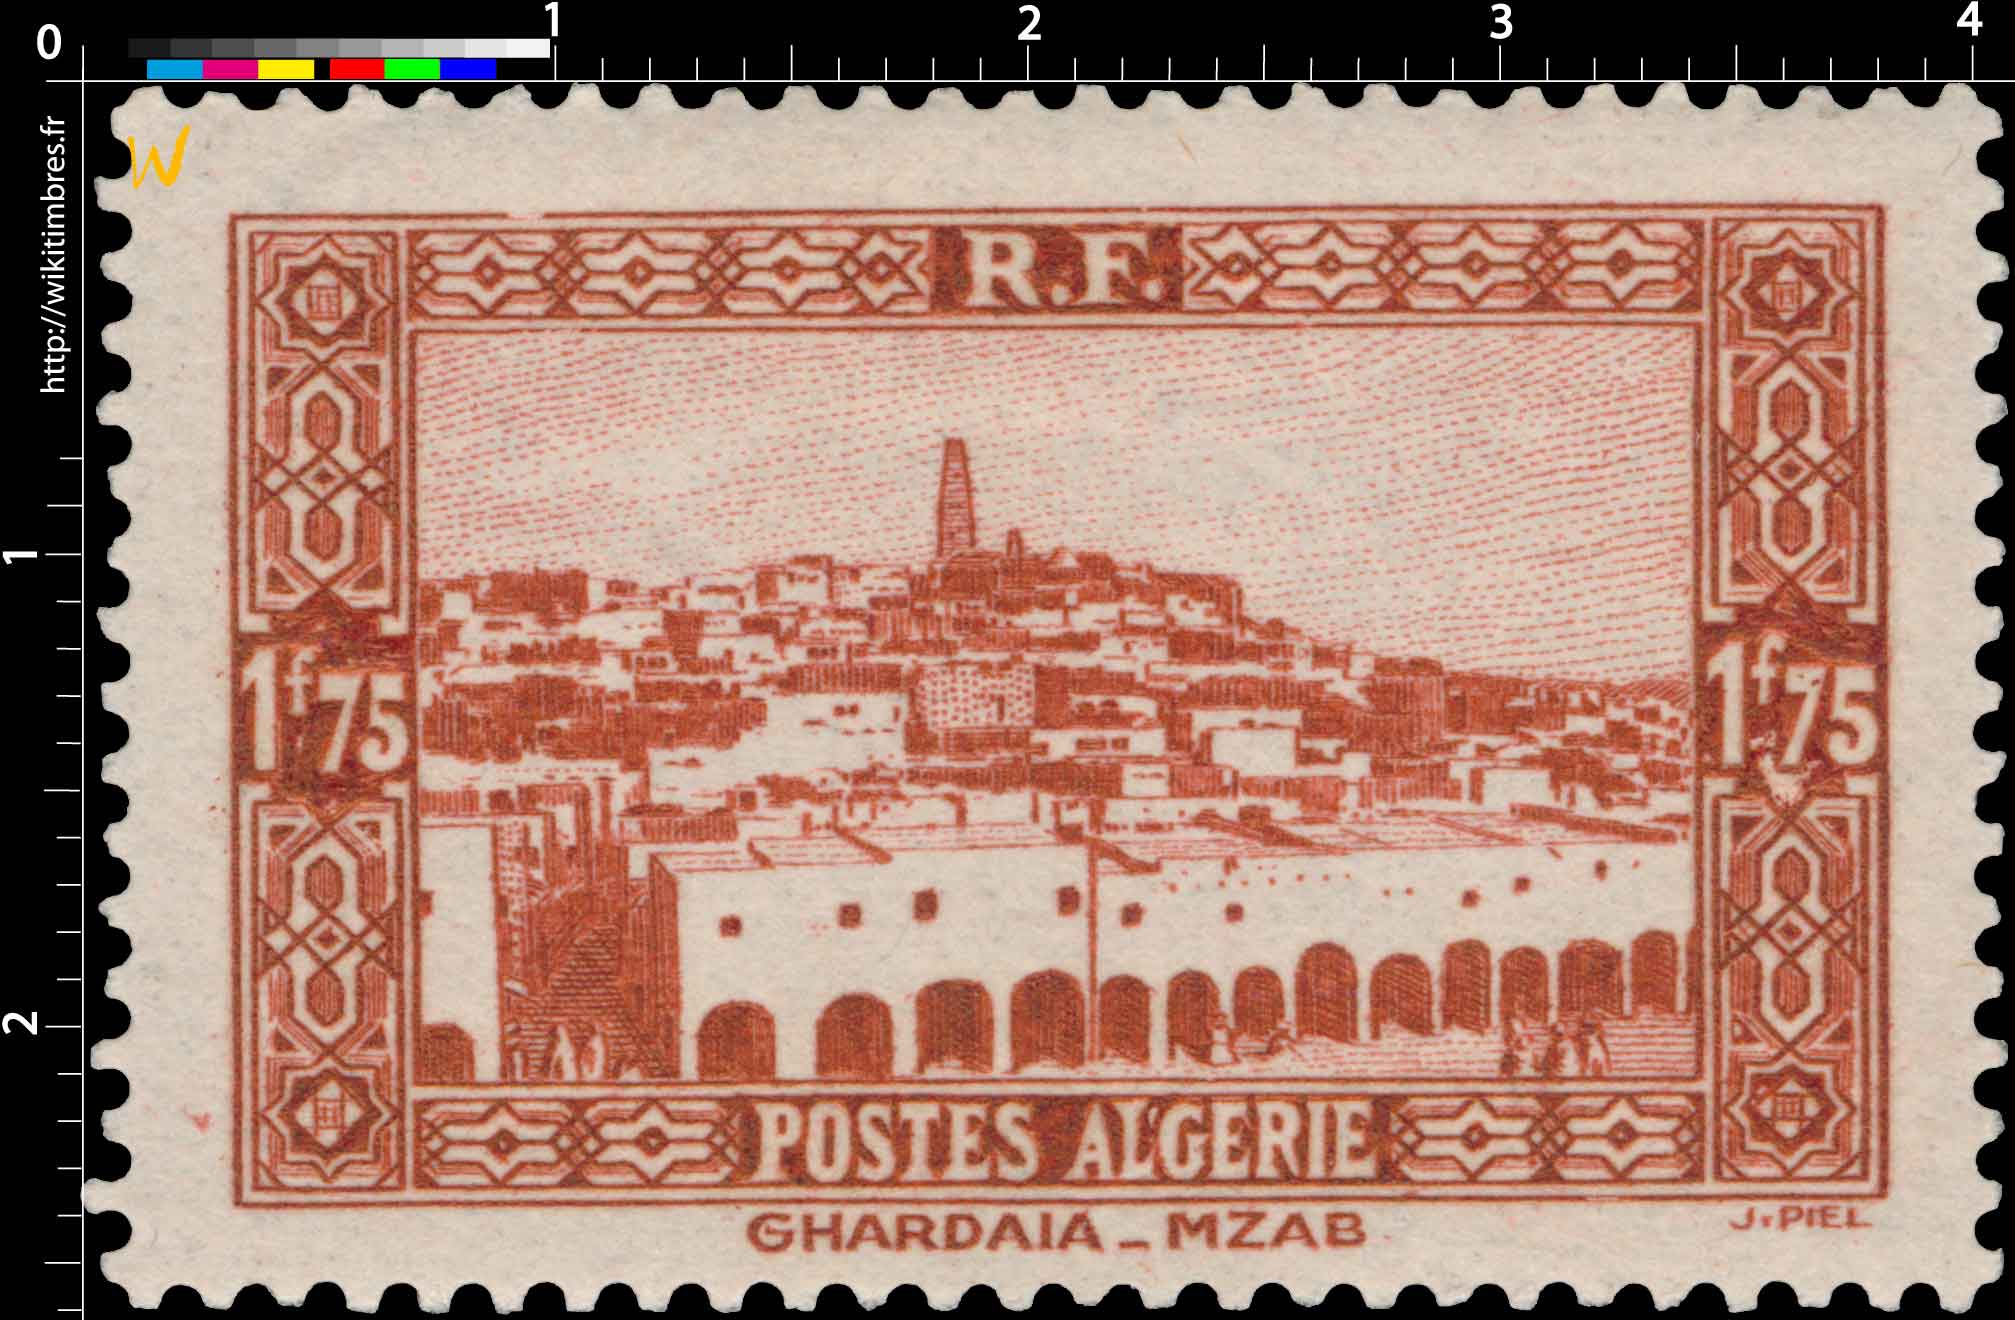 Algérie - Ghardaïa - MZAB